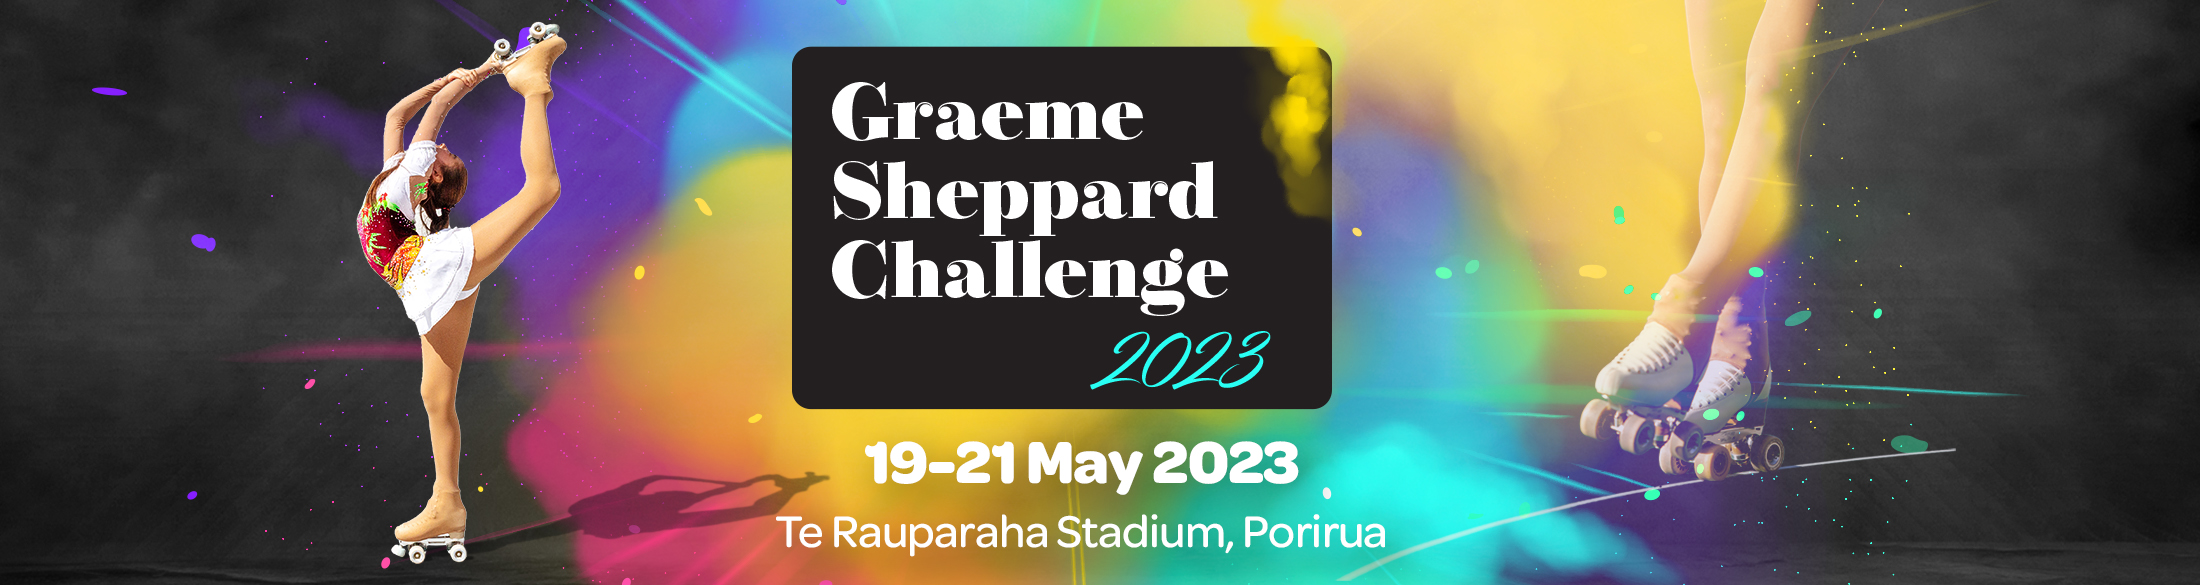 Graeme Sheppard Challenge 2023 banner